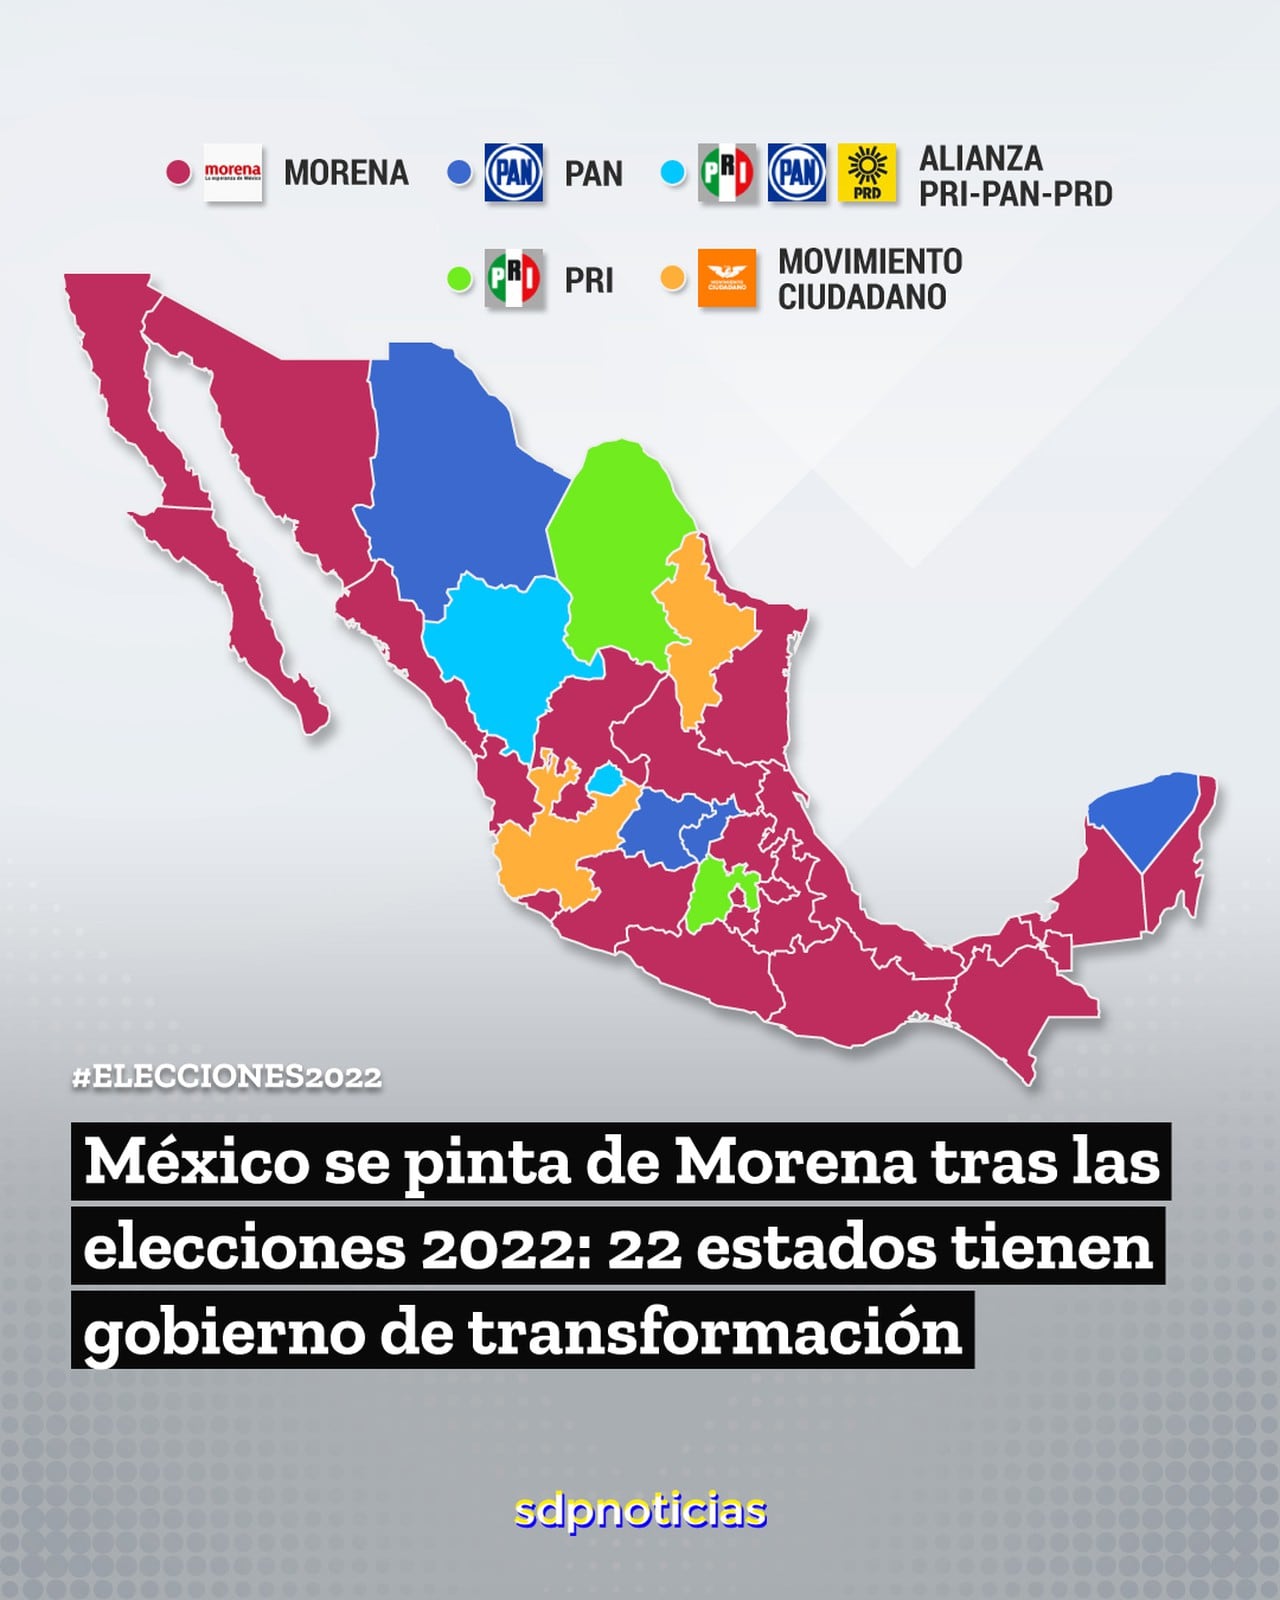 Elecciones 2022 México Cómo quedó el mapa político del país por partidos; Morena gobernará 22